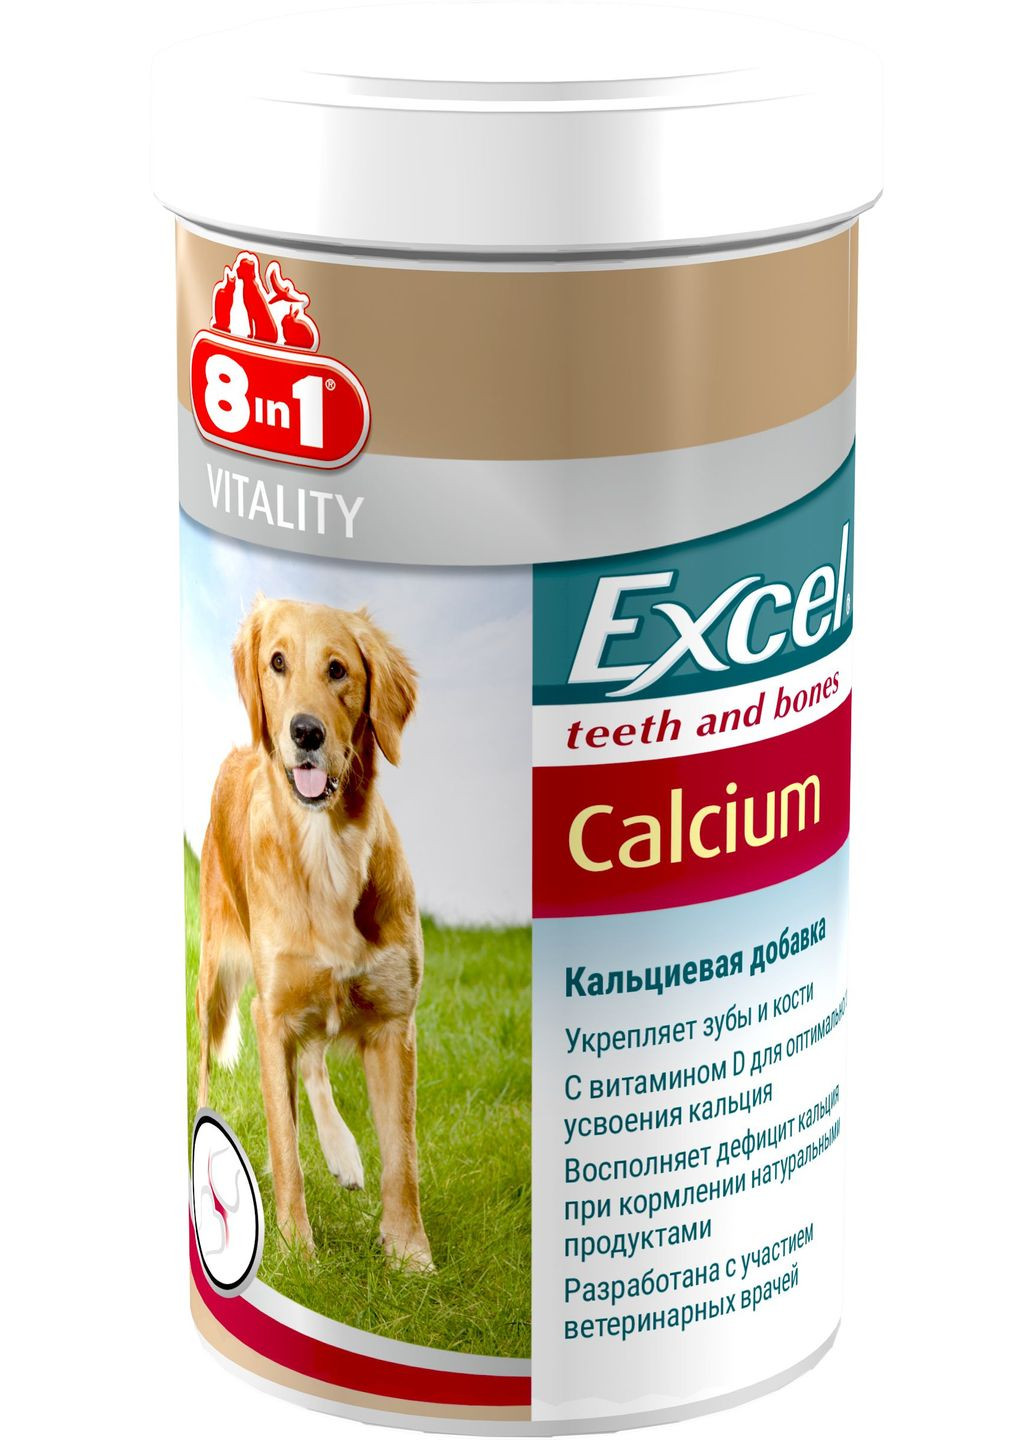 Кальций Excel Calcium для собак таблетки 470 шт (4048422109433) 8in1 (279564356)